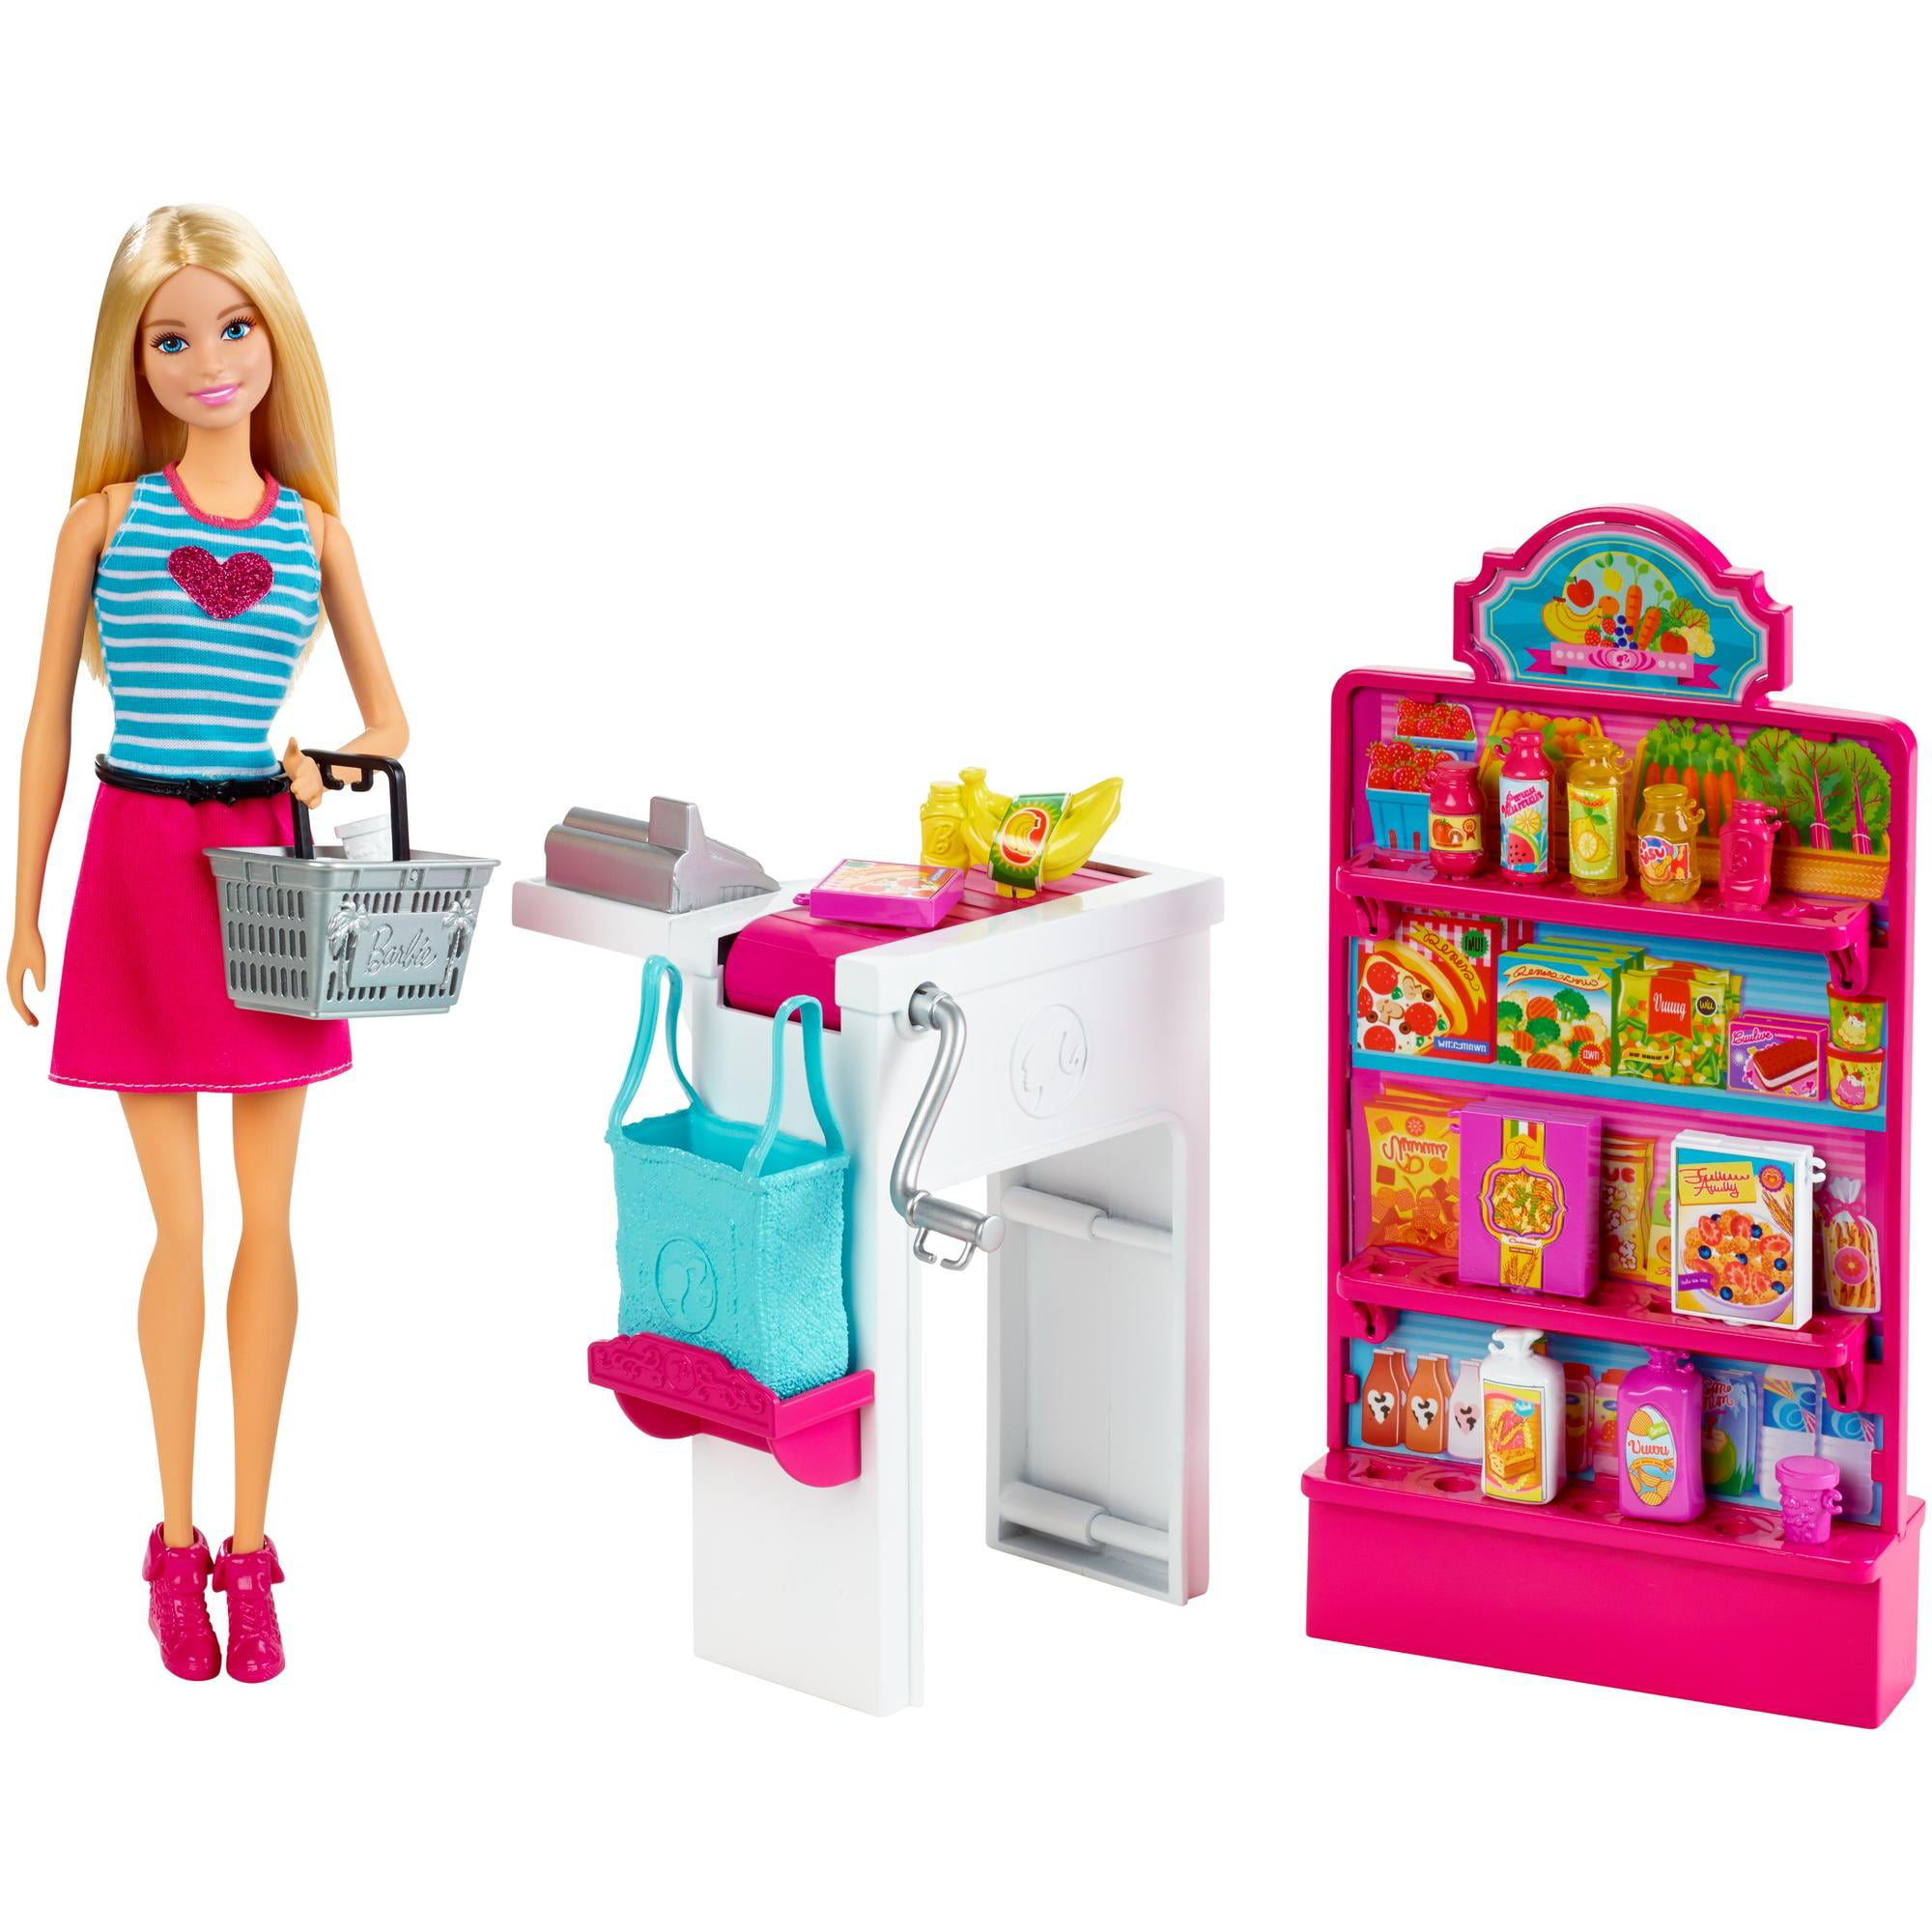 В каких магазинах можно купить игрушки. Набор Barbie продуктовый магазин Малибу, 29 см, ckp77. Barbie Malibu набор. Куклы Барби плейсет. Игровой набор Barbie продуктовая Лавка.